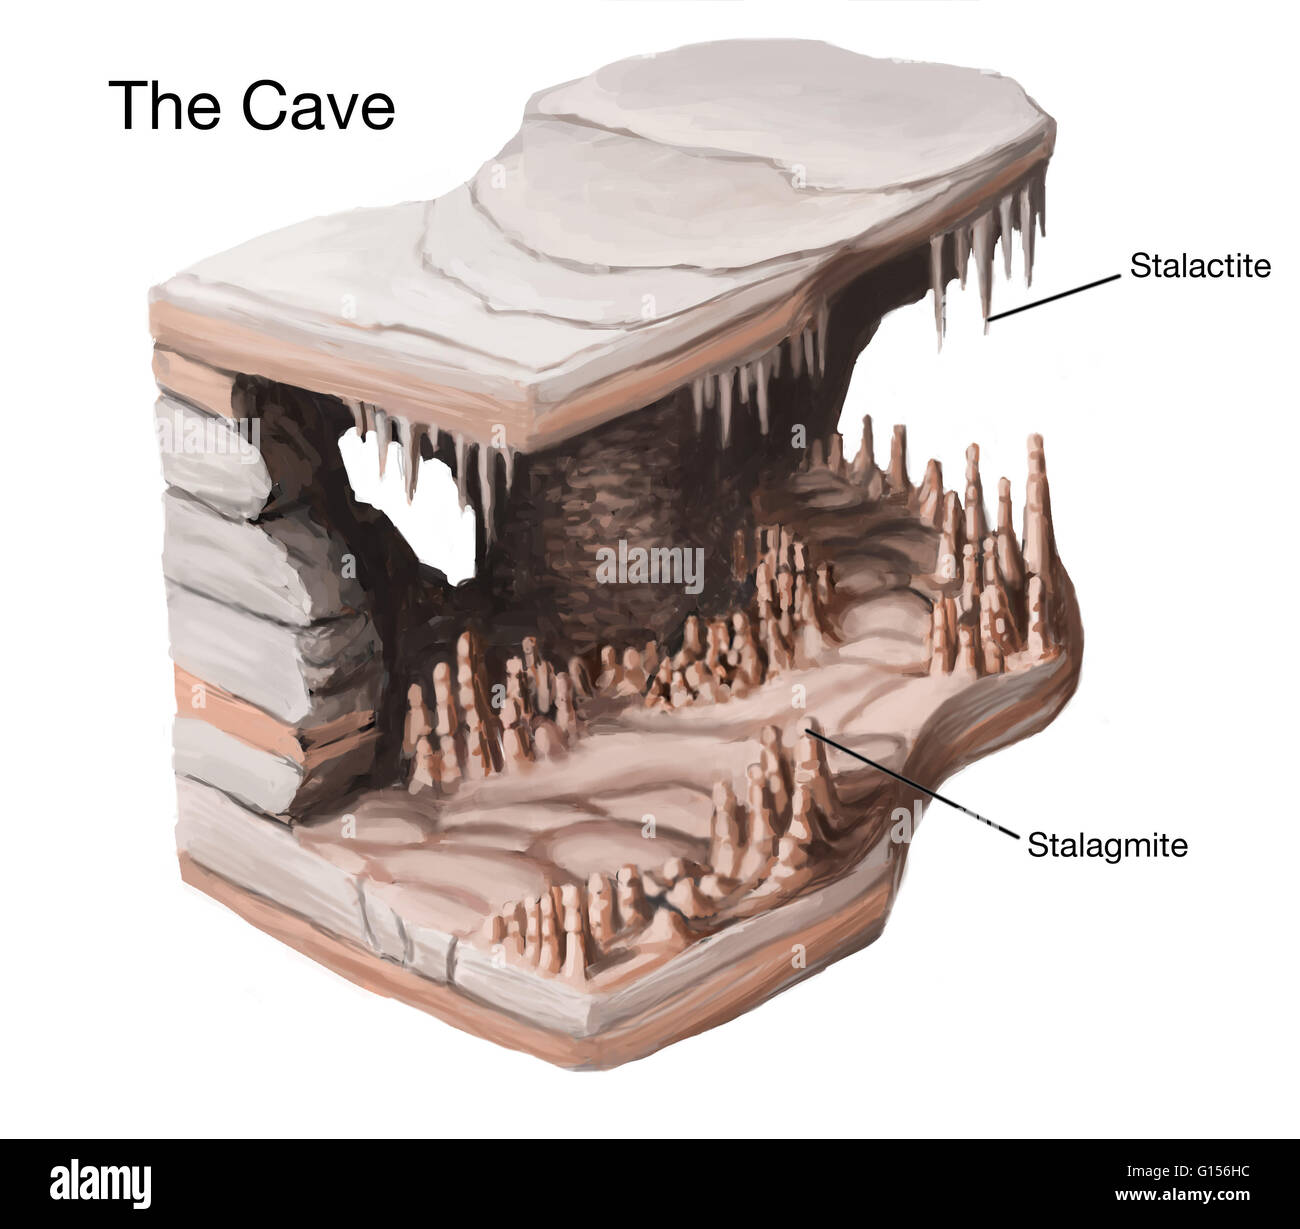 Illustration de stalactites et stalagmites dans une grotte. Stalactites et stalagmites sont grotte secondaire formations qui se forment lorsque les minéraux calcium dissous sont précipités hors de la solution. Forme de stalactites goutte d'eau souterraine, sur le plafond des grottes Banque D'Images